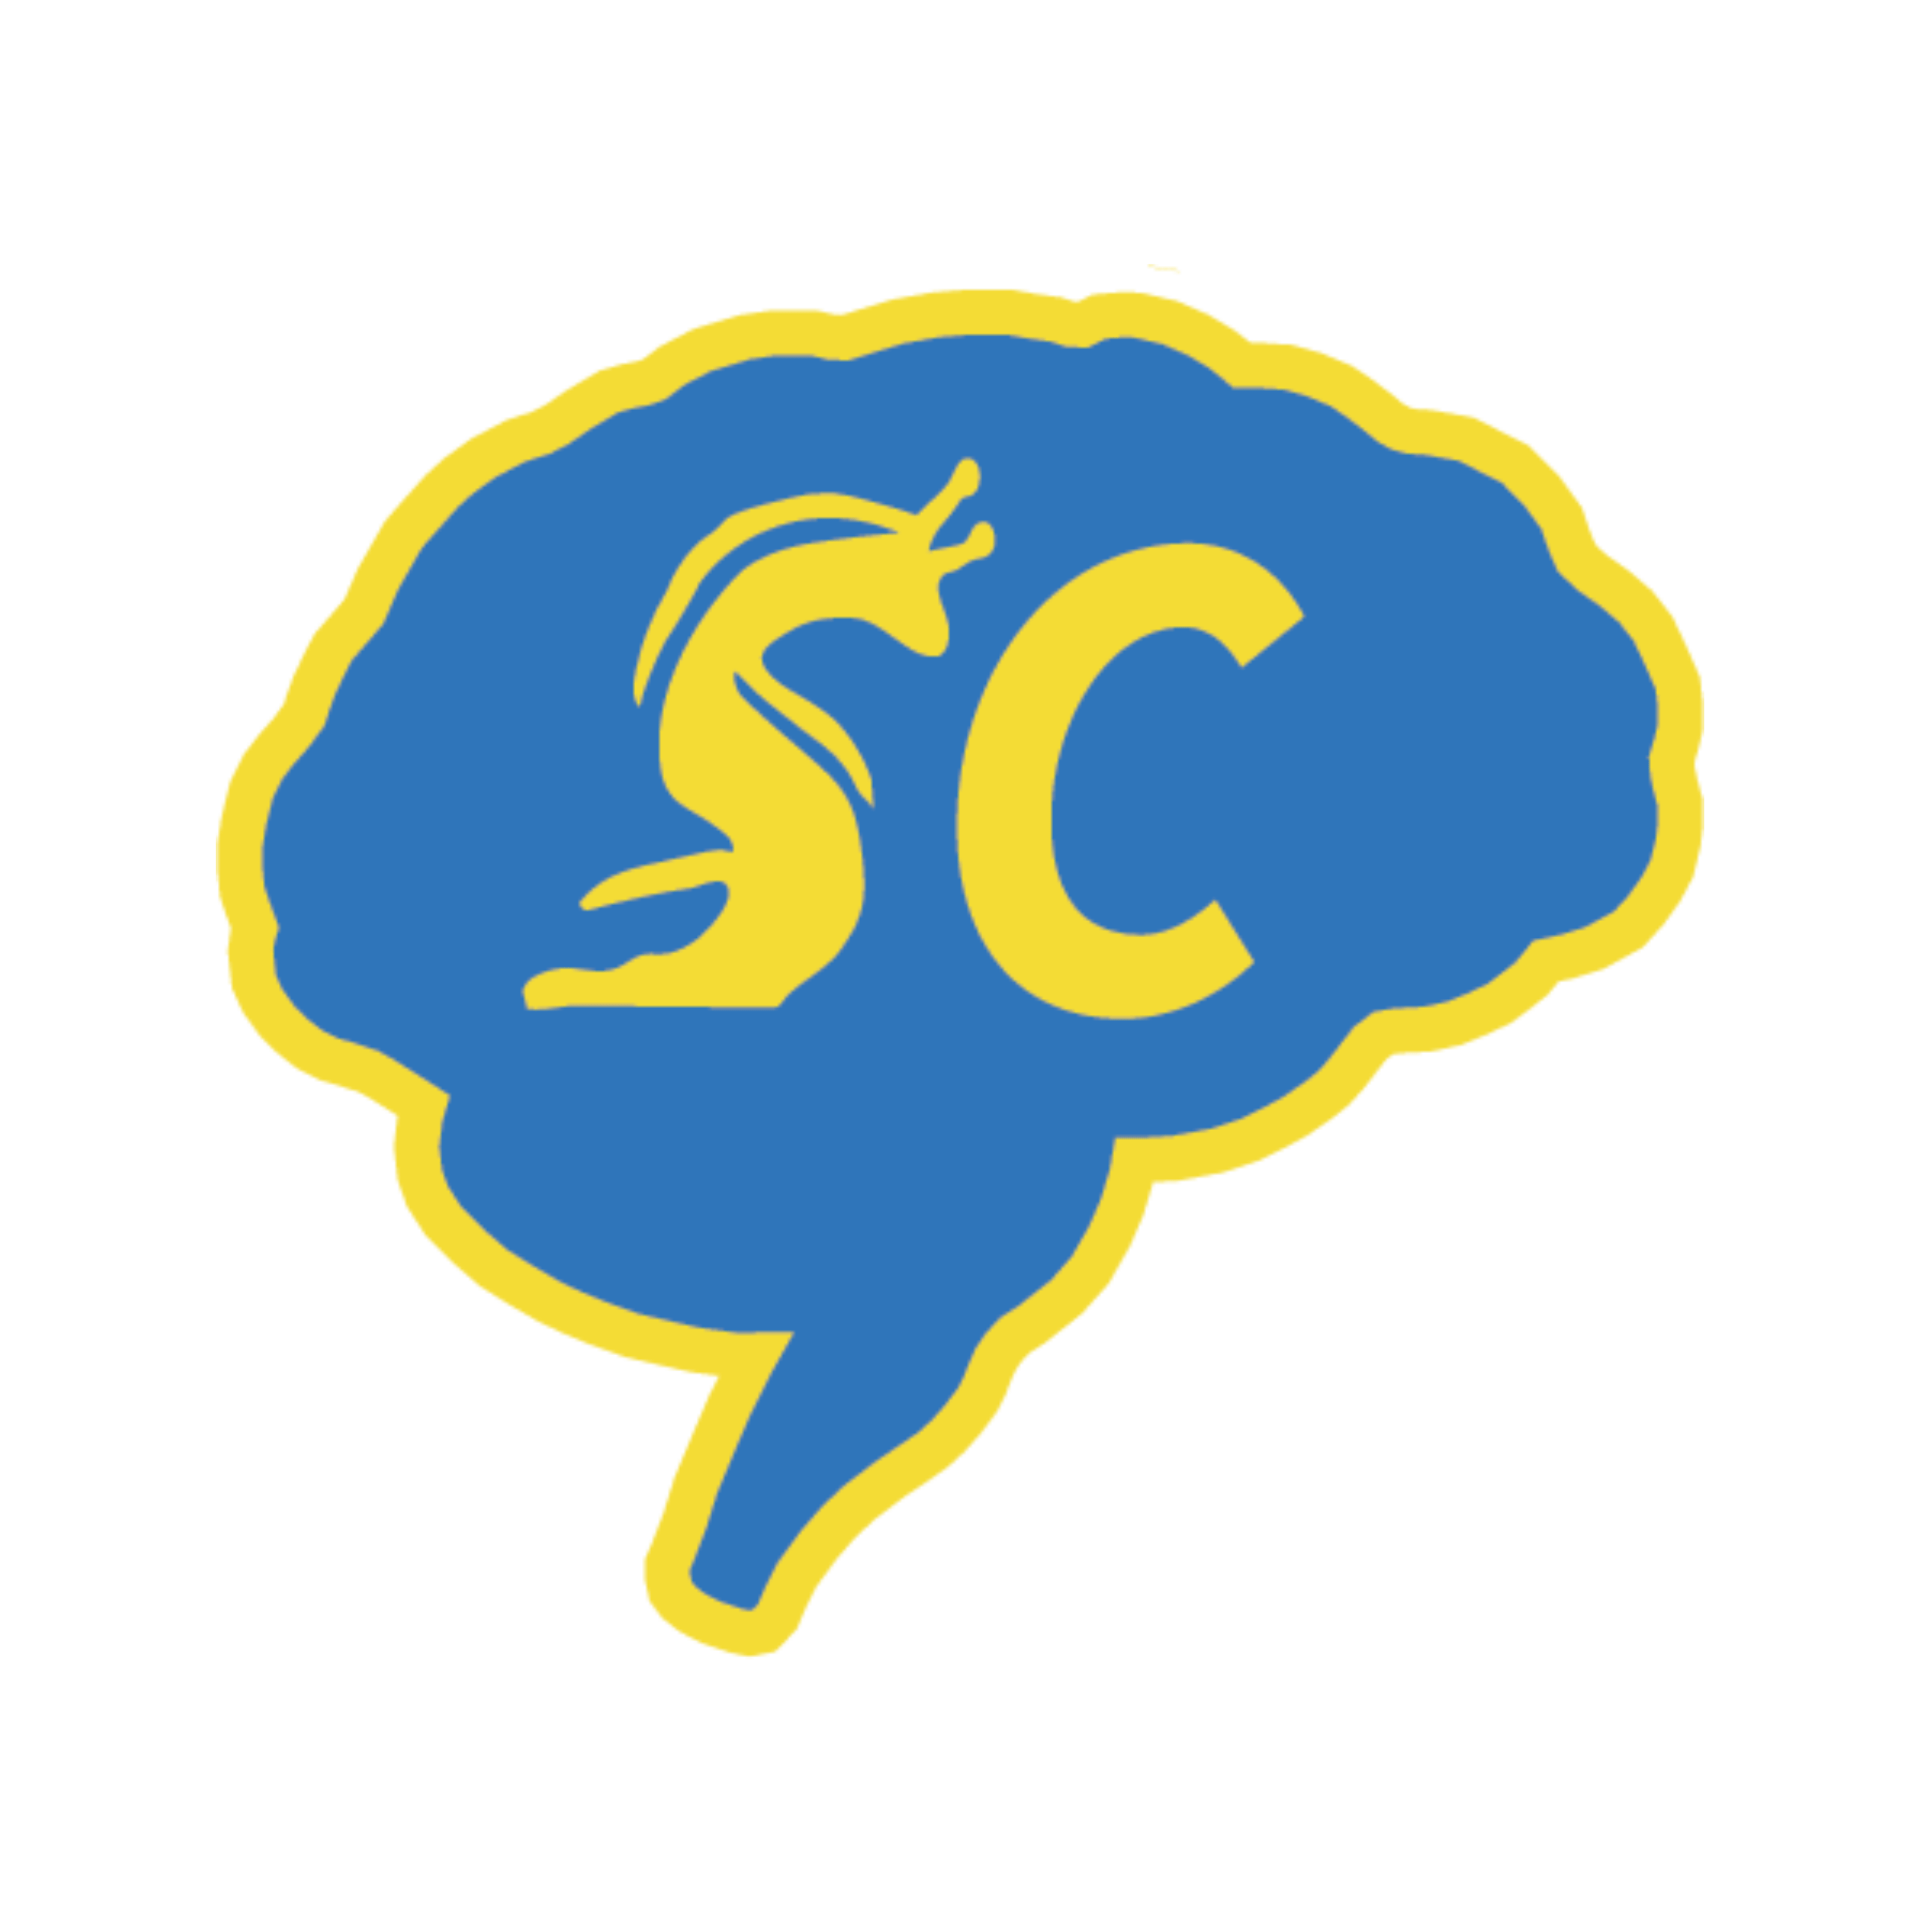 neurotechSC-logo